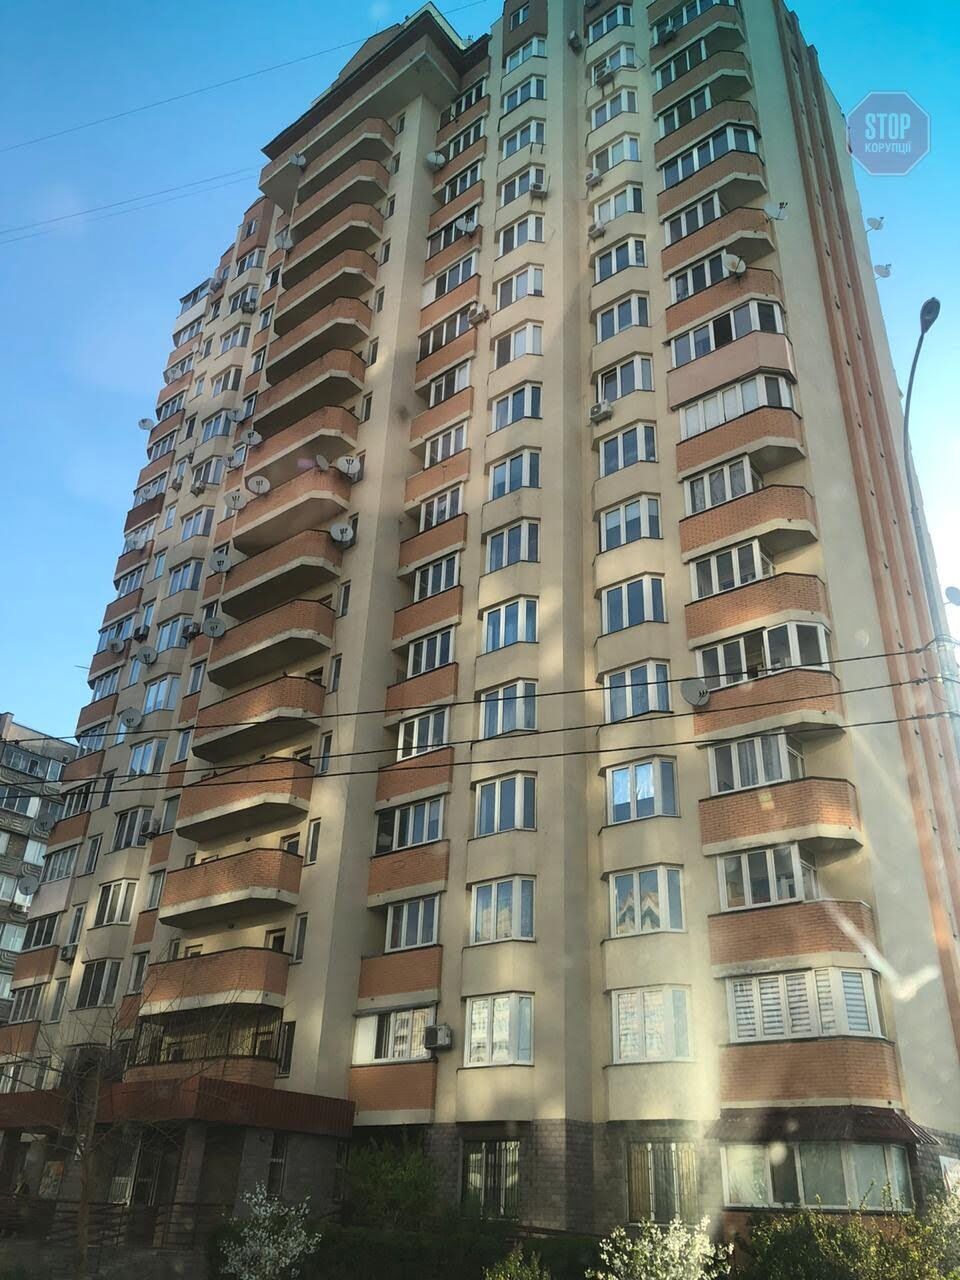 Будинок по вулиці Алмаатинській, де живе Валерія